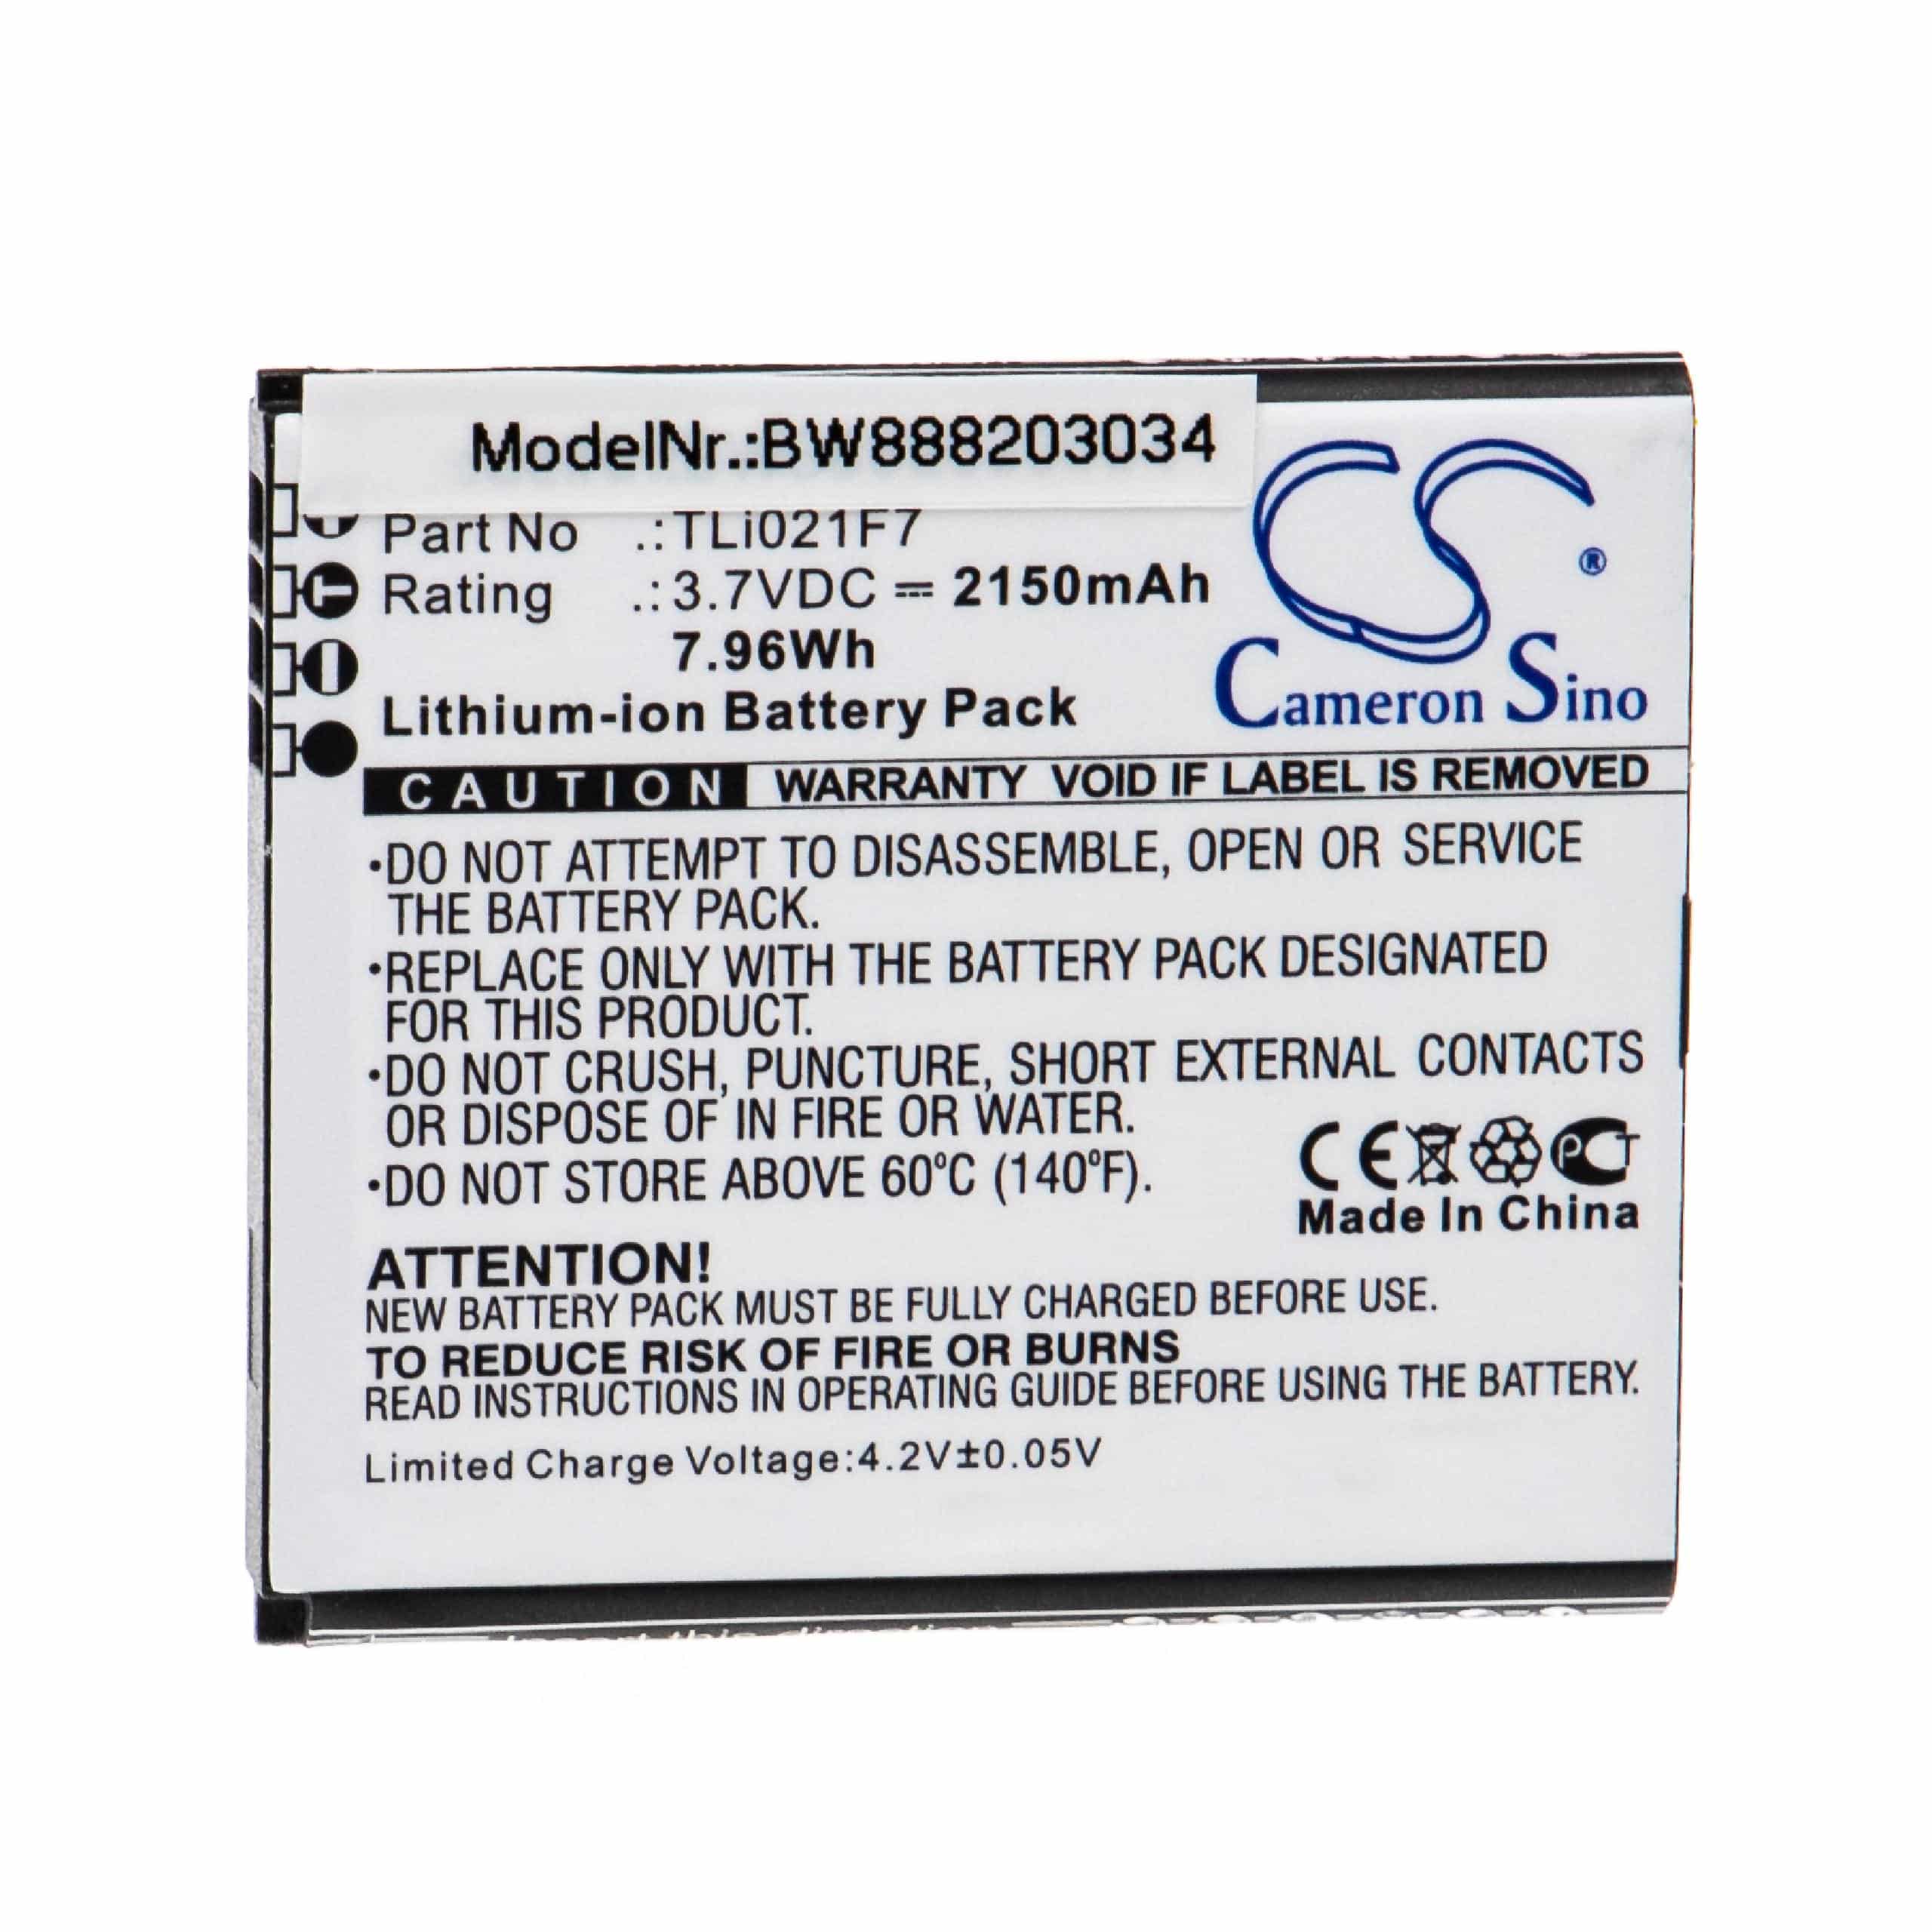 Batterie remplace Alcatel TLi021F7 pour routeur modem - 2150mAh 3,7V Li-ion